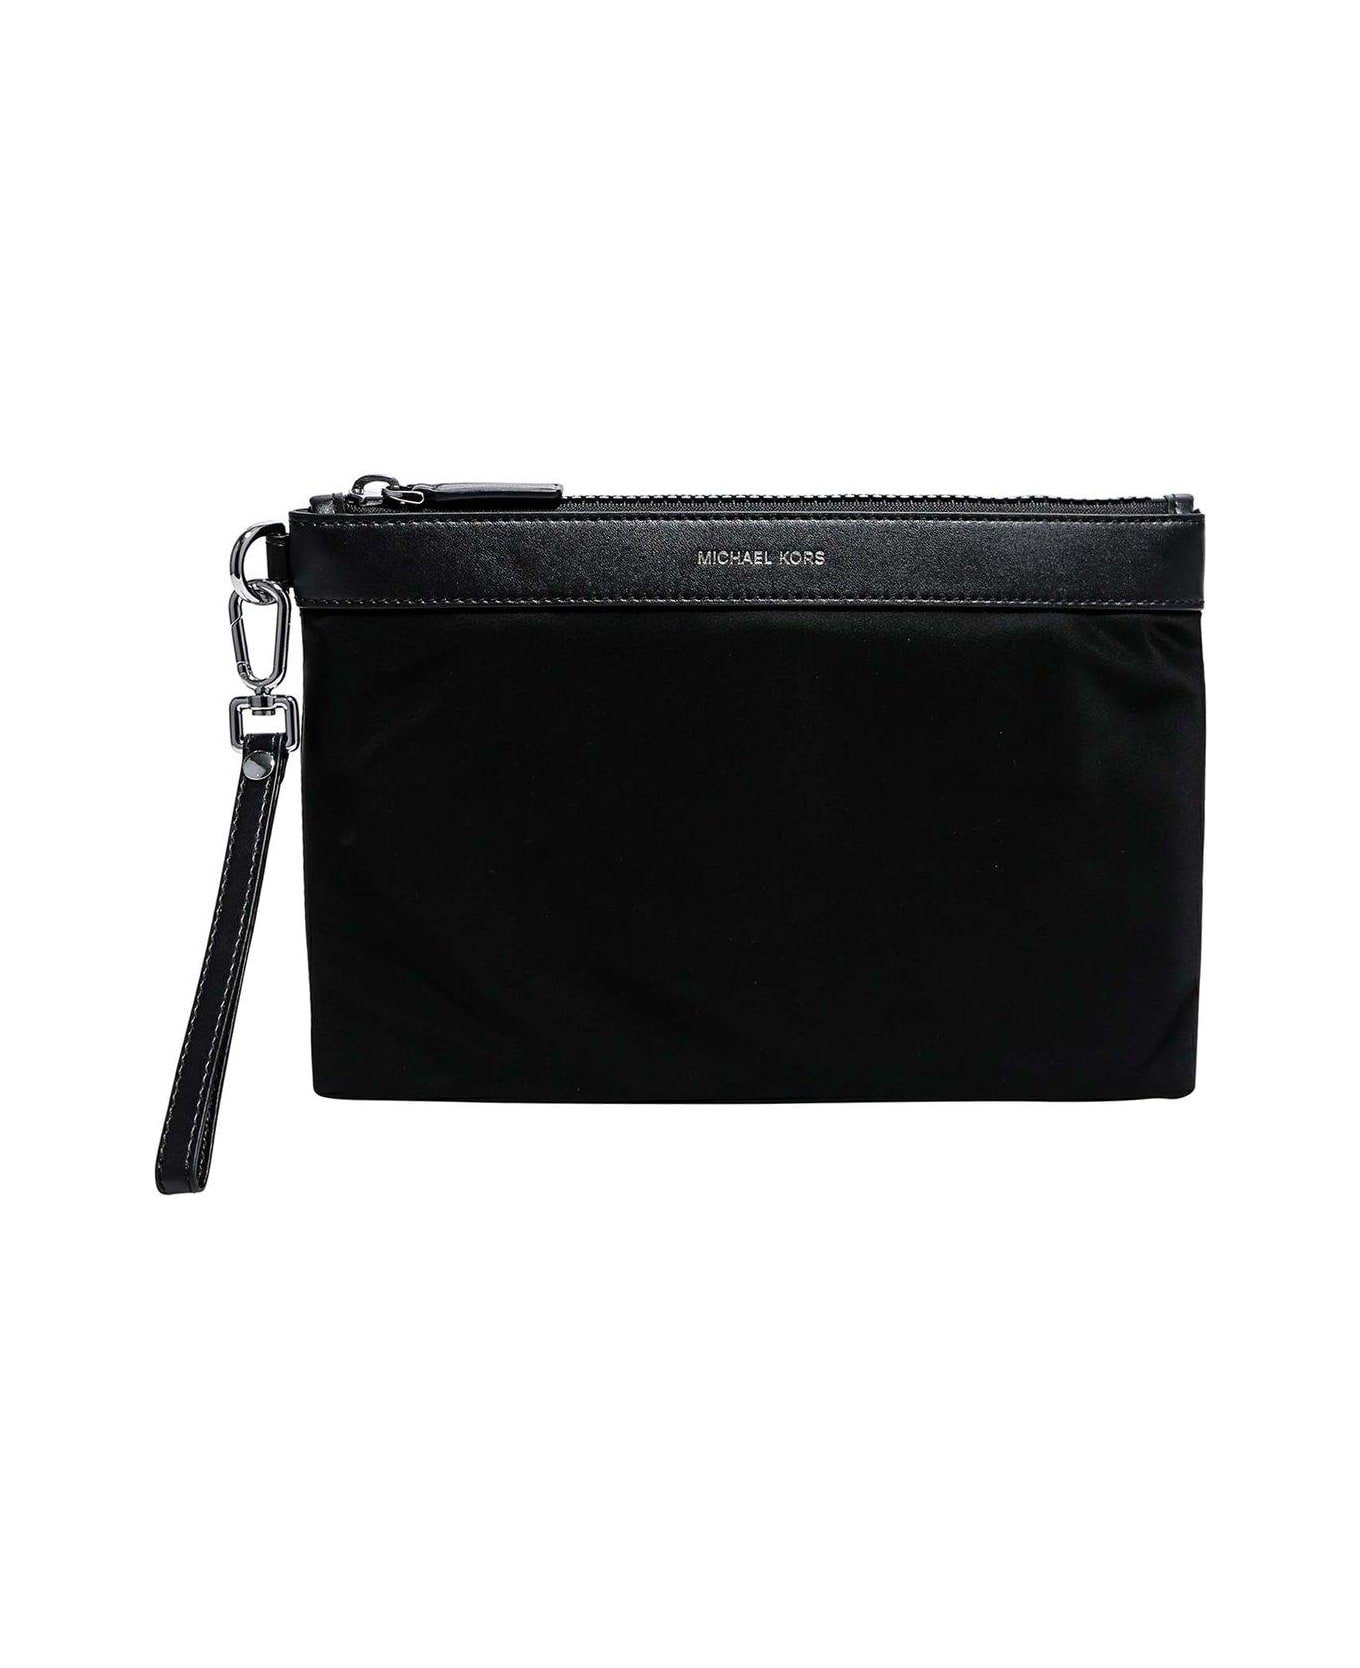 Michael Kors Logo Detailed Zipped Clutch Bag - Black トートバッグ